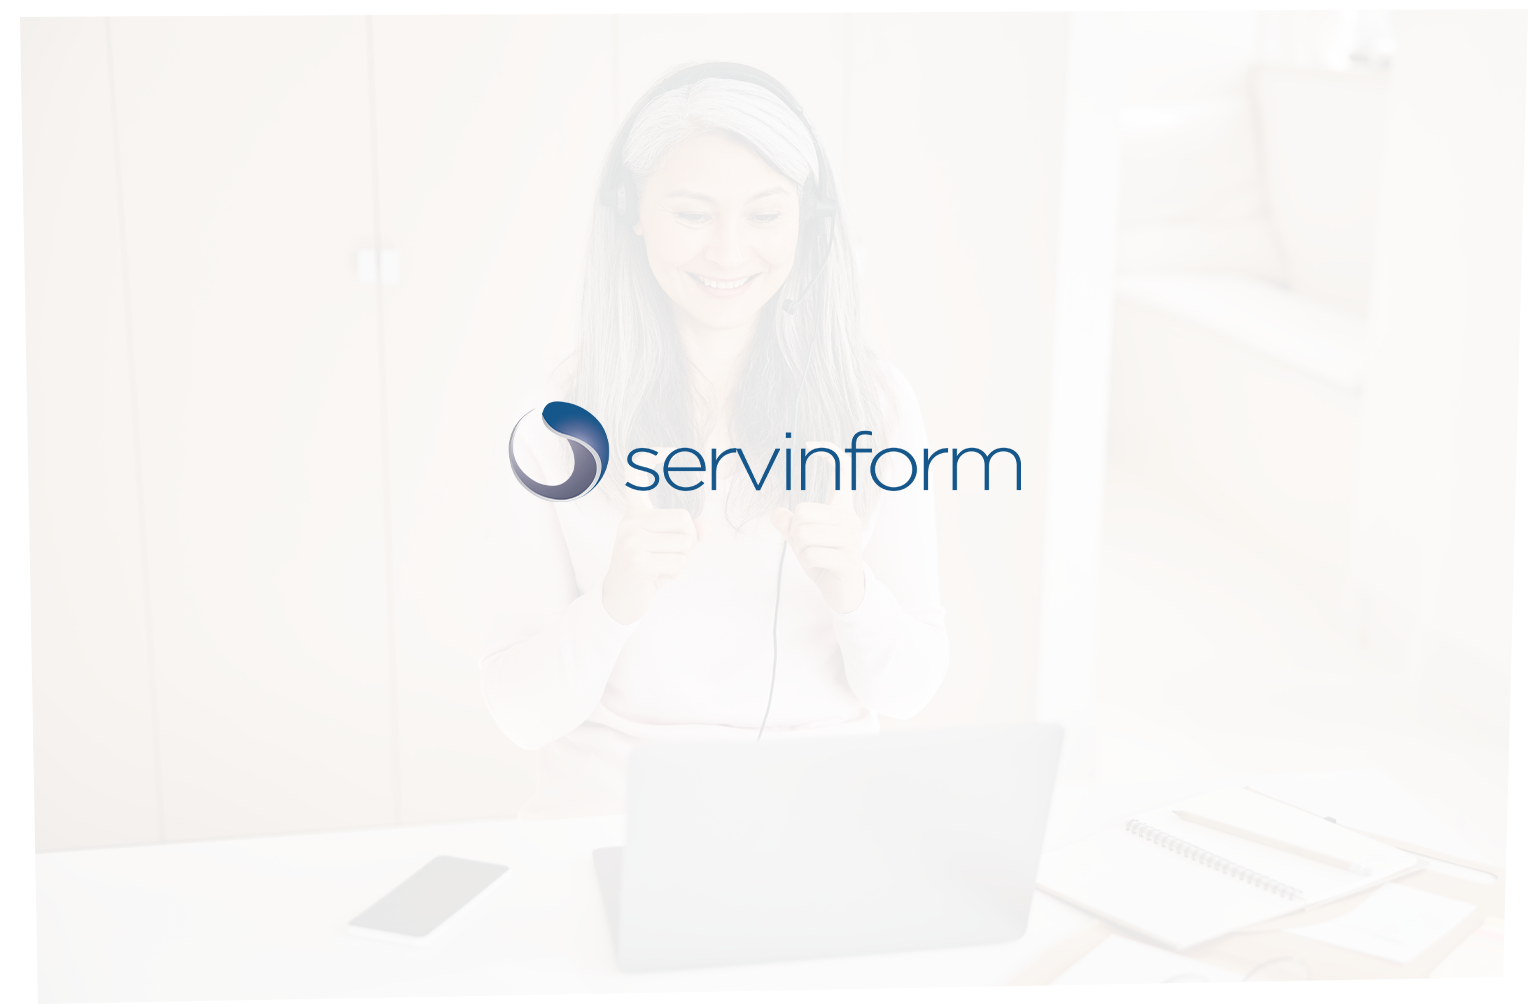 Servinform ofrece un servicio de cita previa para personas con discapacidad auditiva y personas sordas